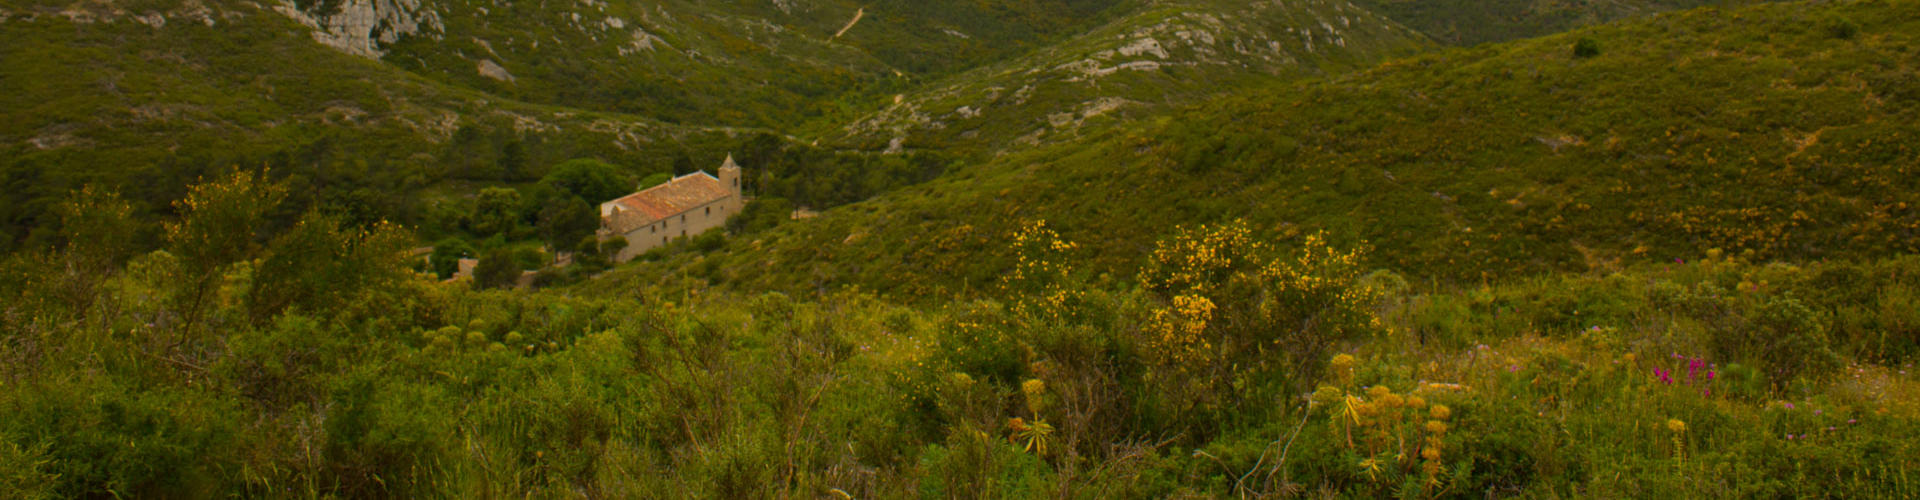 Santa Caterina i castell de Montgrí